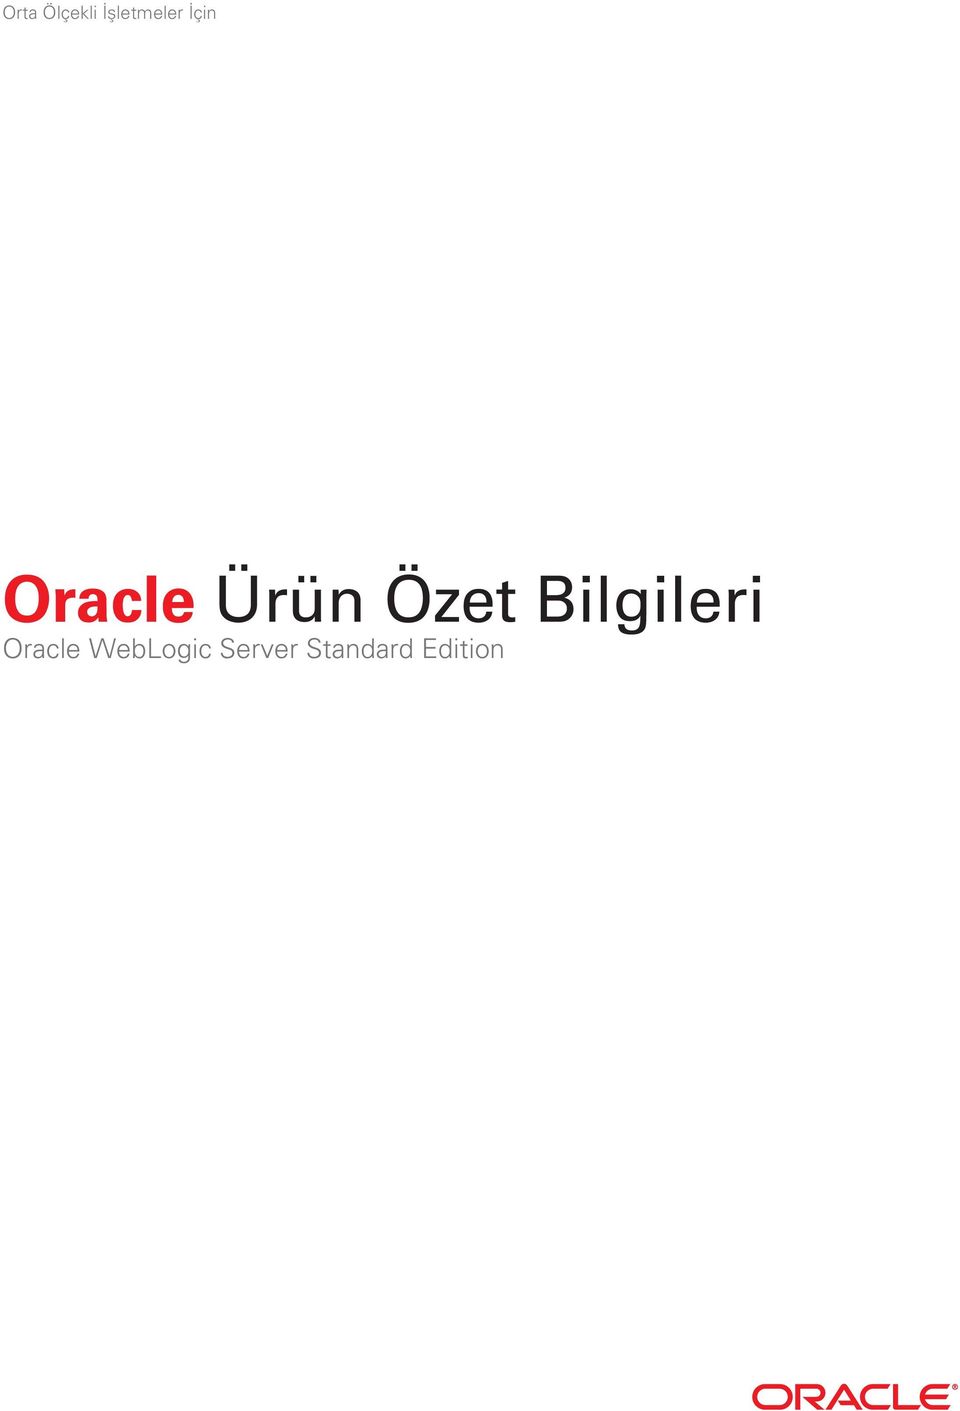 Oracle Ürün